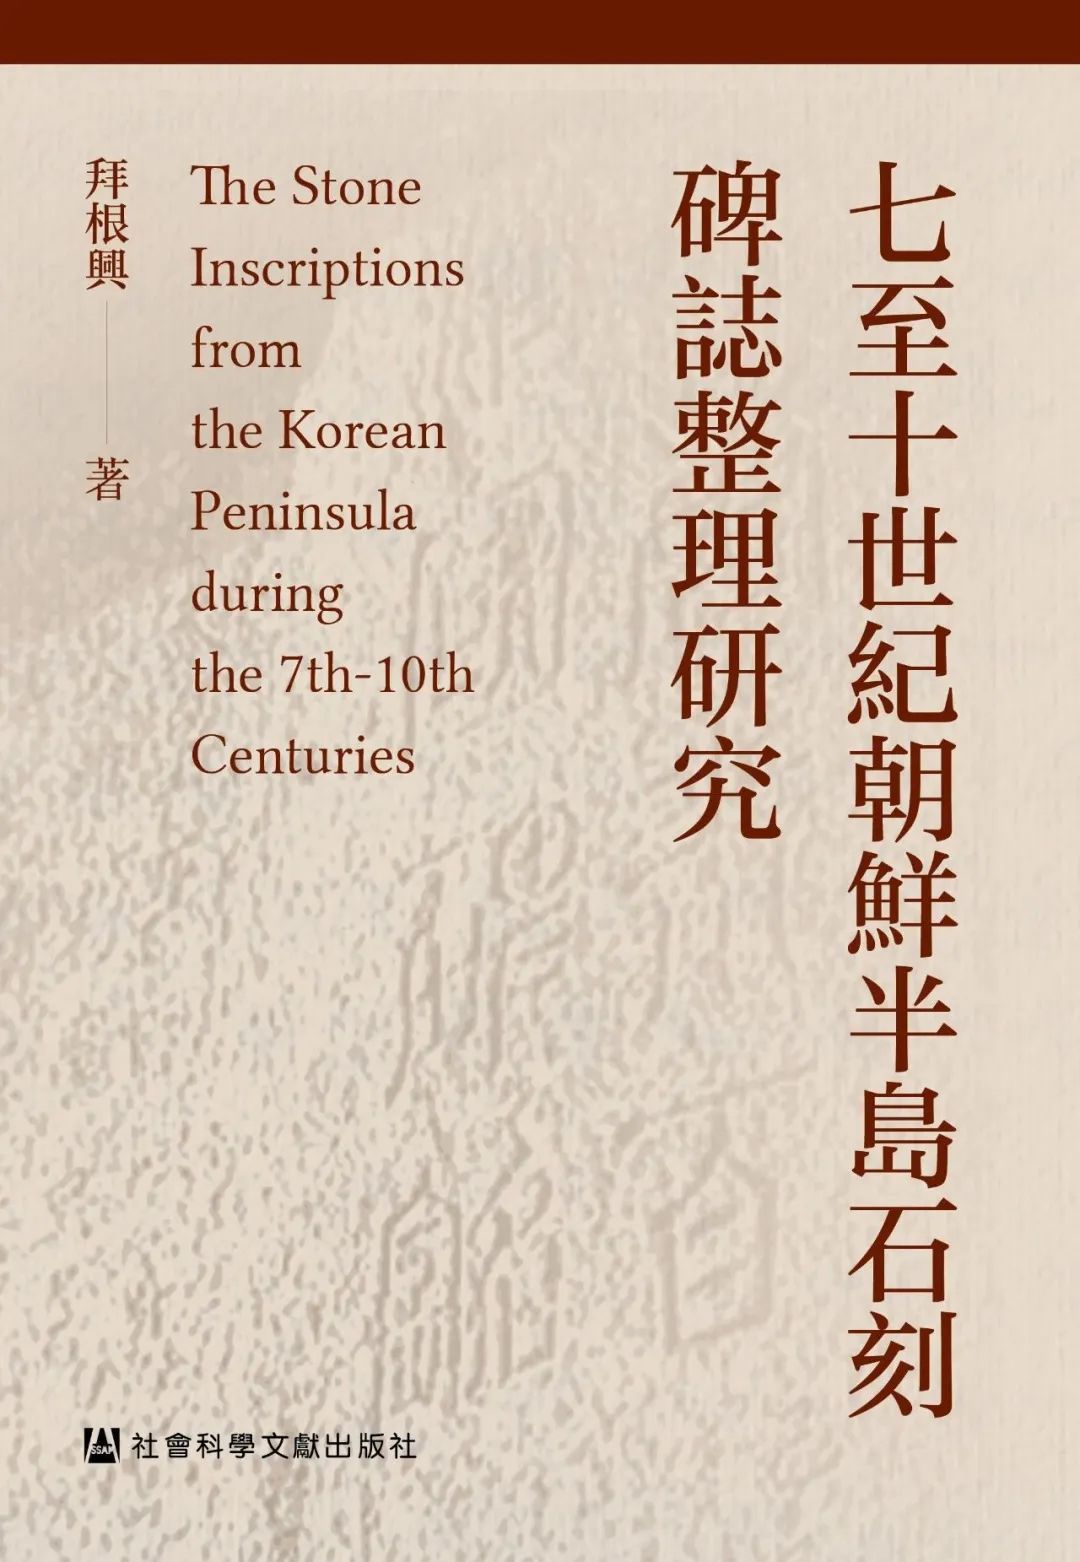 新書| 《七至十世紀朝鮮半島石刻碑誌整理研究》 | BLOG | 古今文字集成